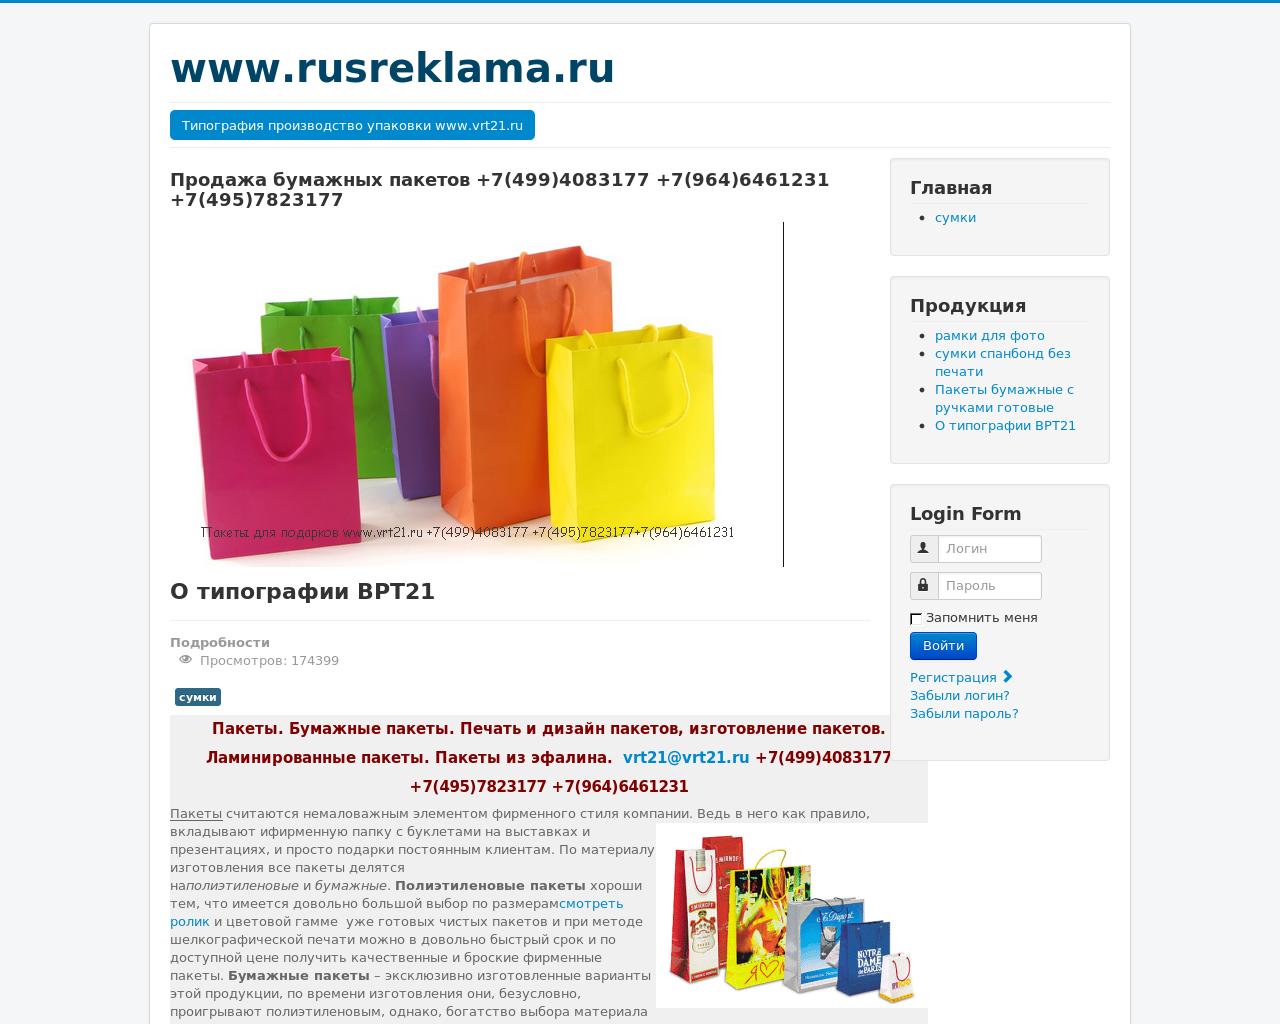 Изображение сайта rusreklama.ru в разрешении 1280x1024